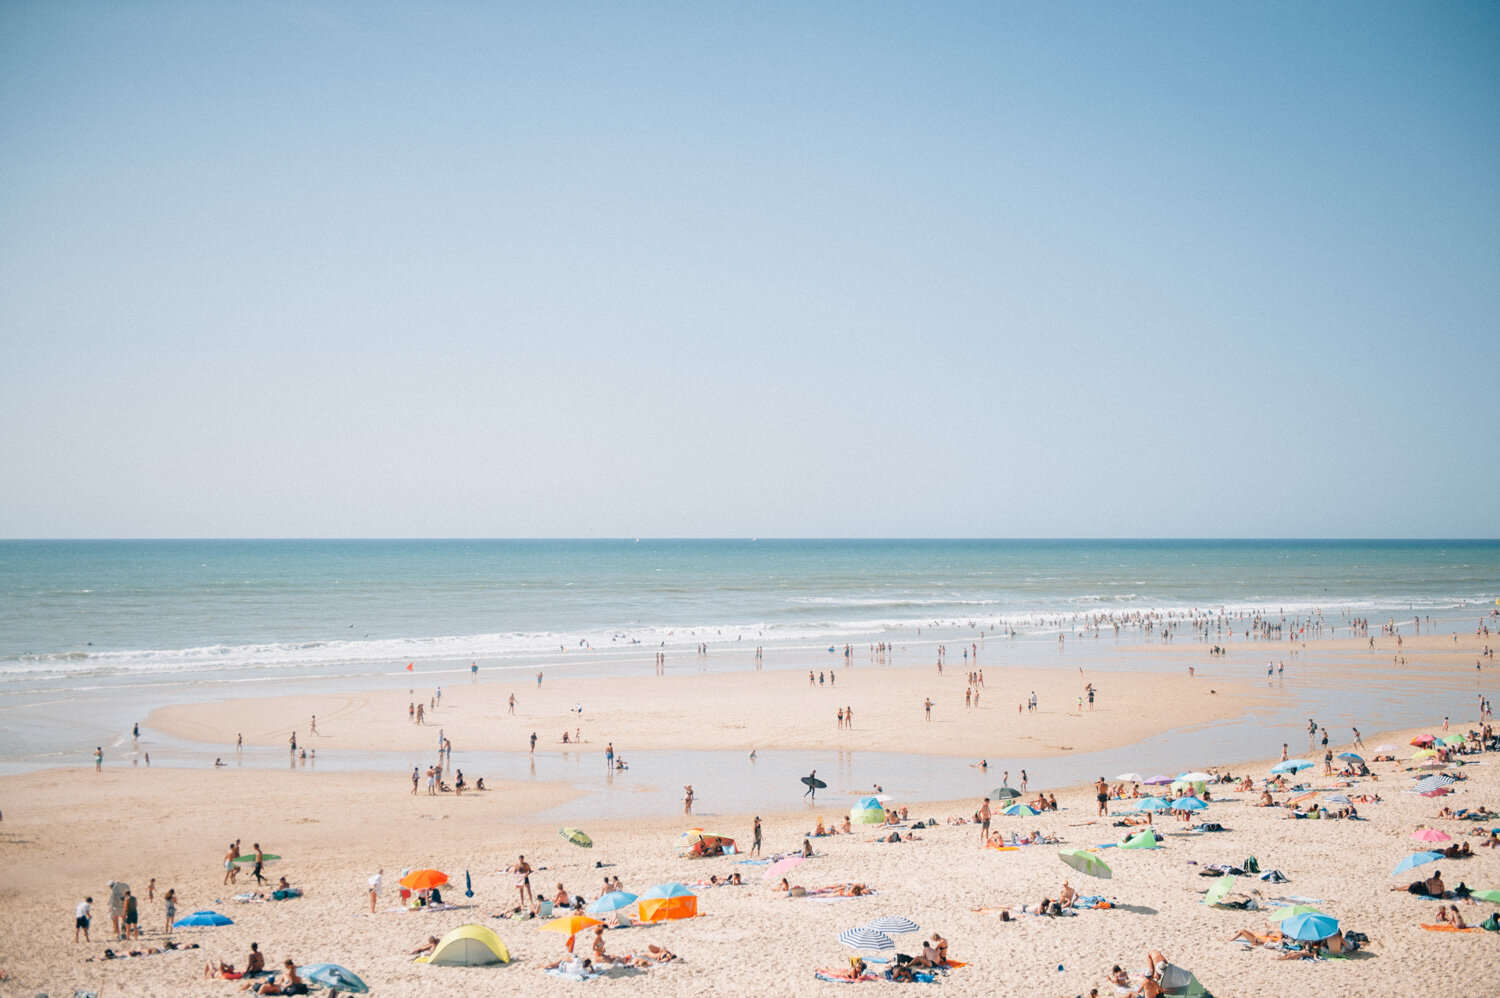  La plage. Avec la CCAS. Gironde, France. Août 2018 // The beach. With the CCAS. Gironde, France. August 2018. 